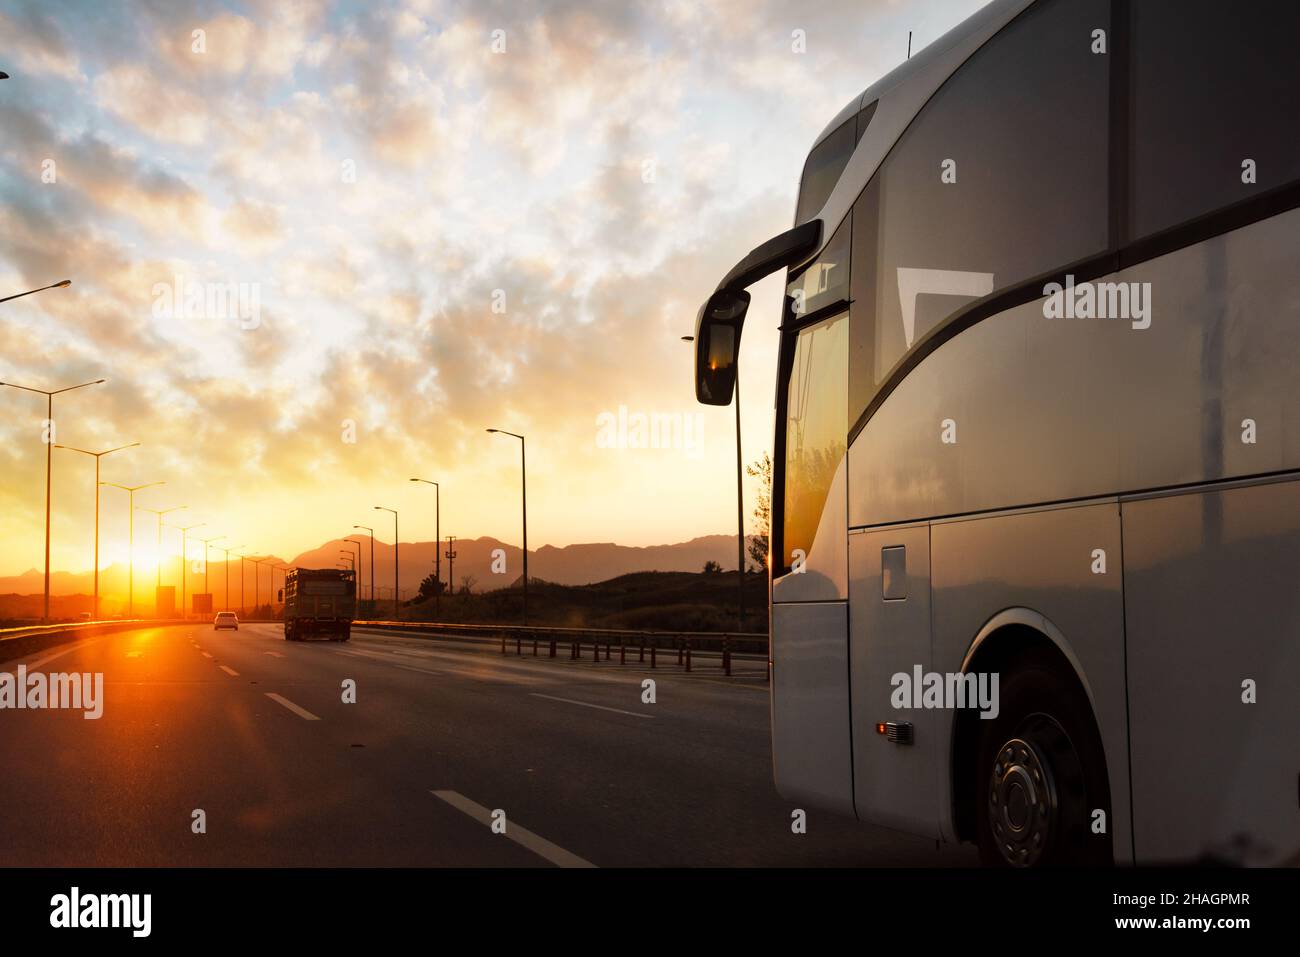 Gegen den Sonnenuntergang fährt ein Bus auf der asphaltierten Landstraße. Reise- und Transportkonzept. Hochwertige Fotos Stockfoto